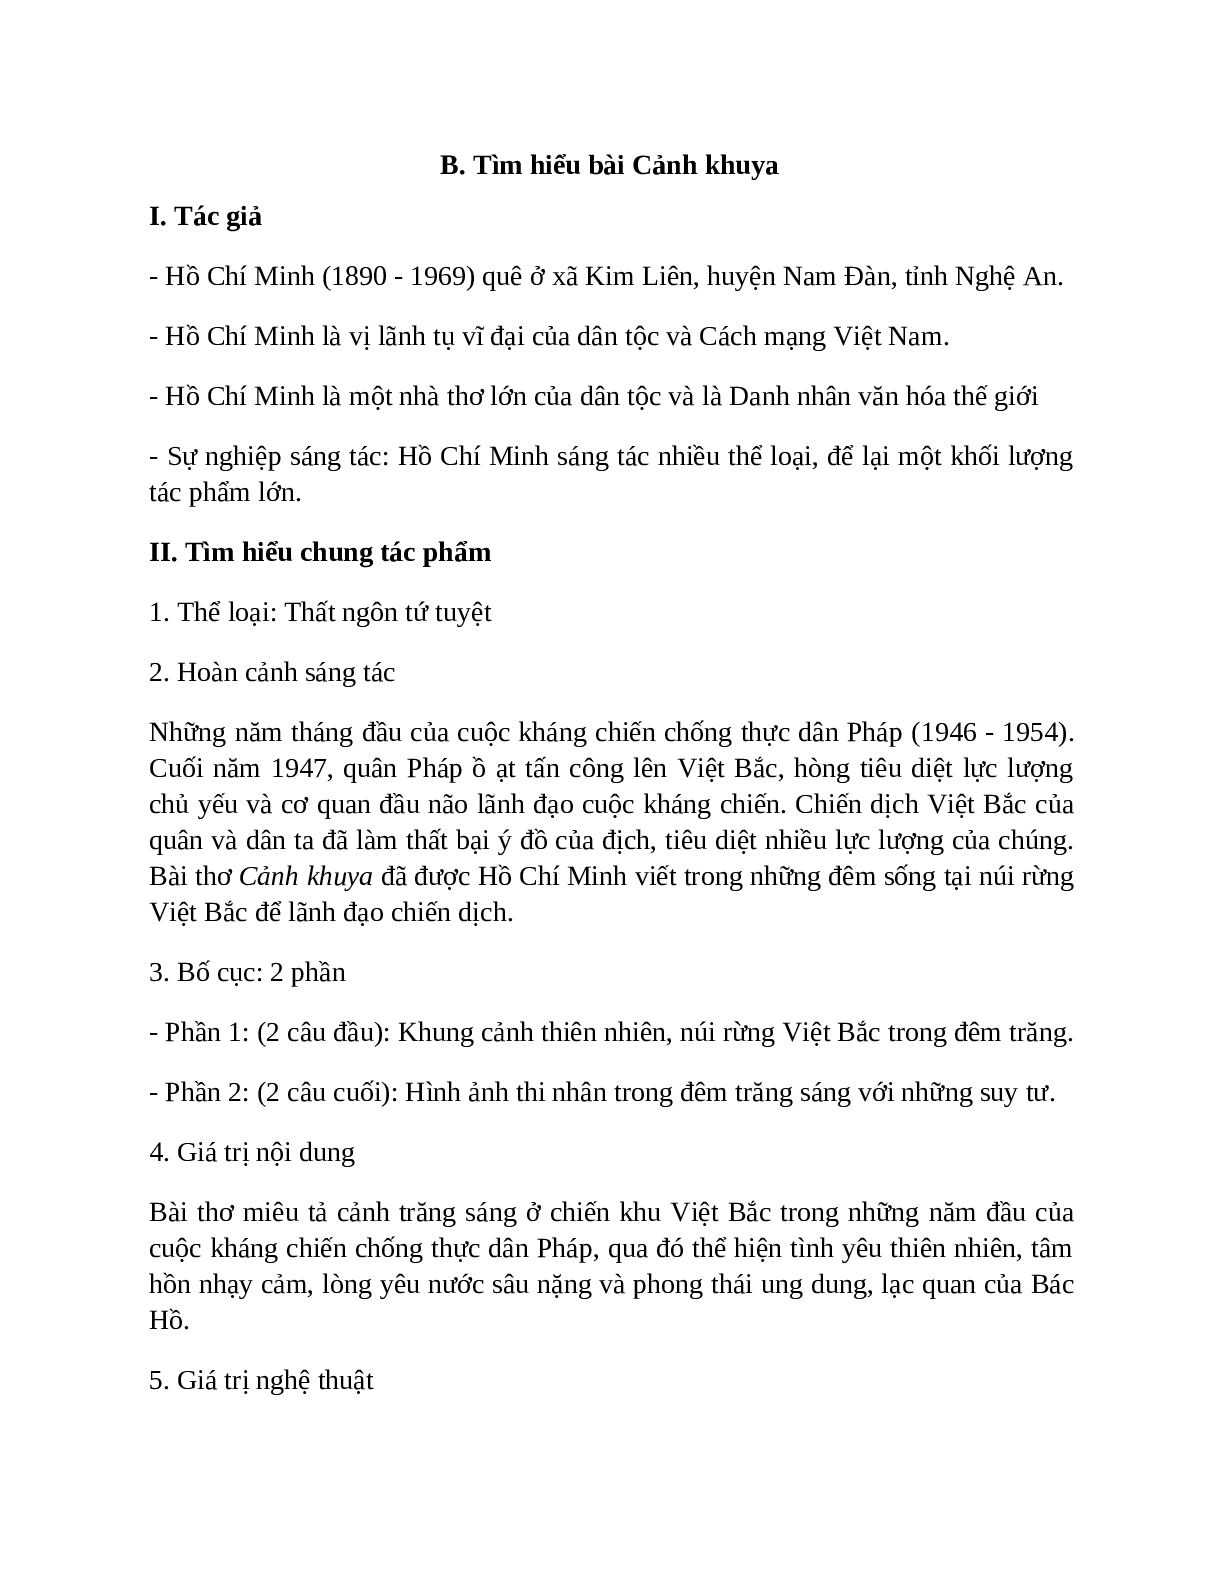 Sơ đồ tư duy bài Cảnh khuya dễ nhớ, ngắn nhất - Ngữ văn lớp 7 (trang 2)